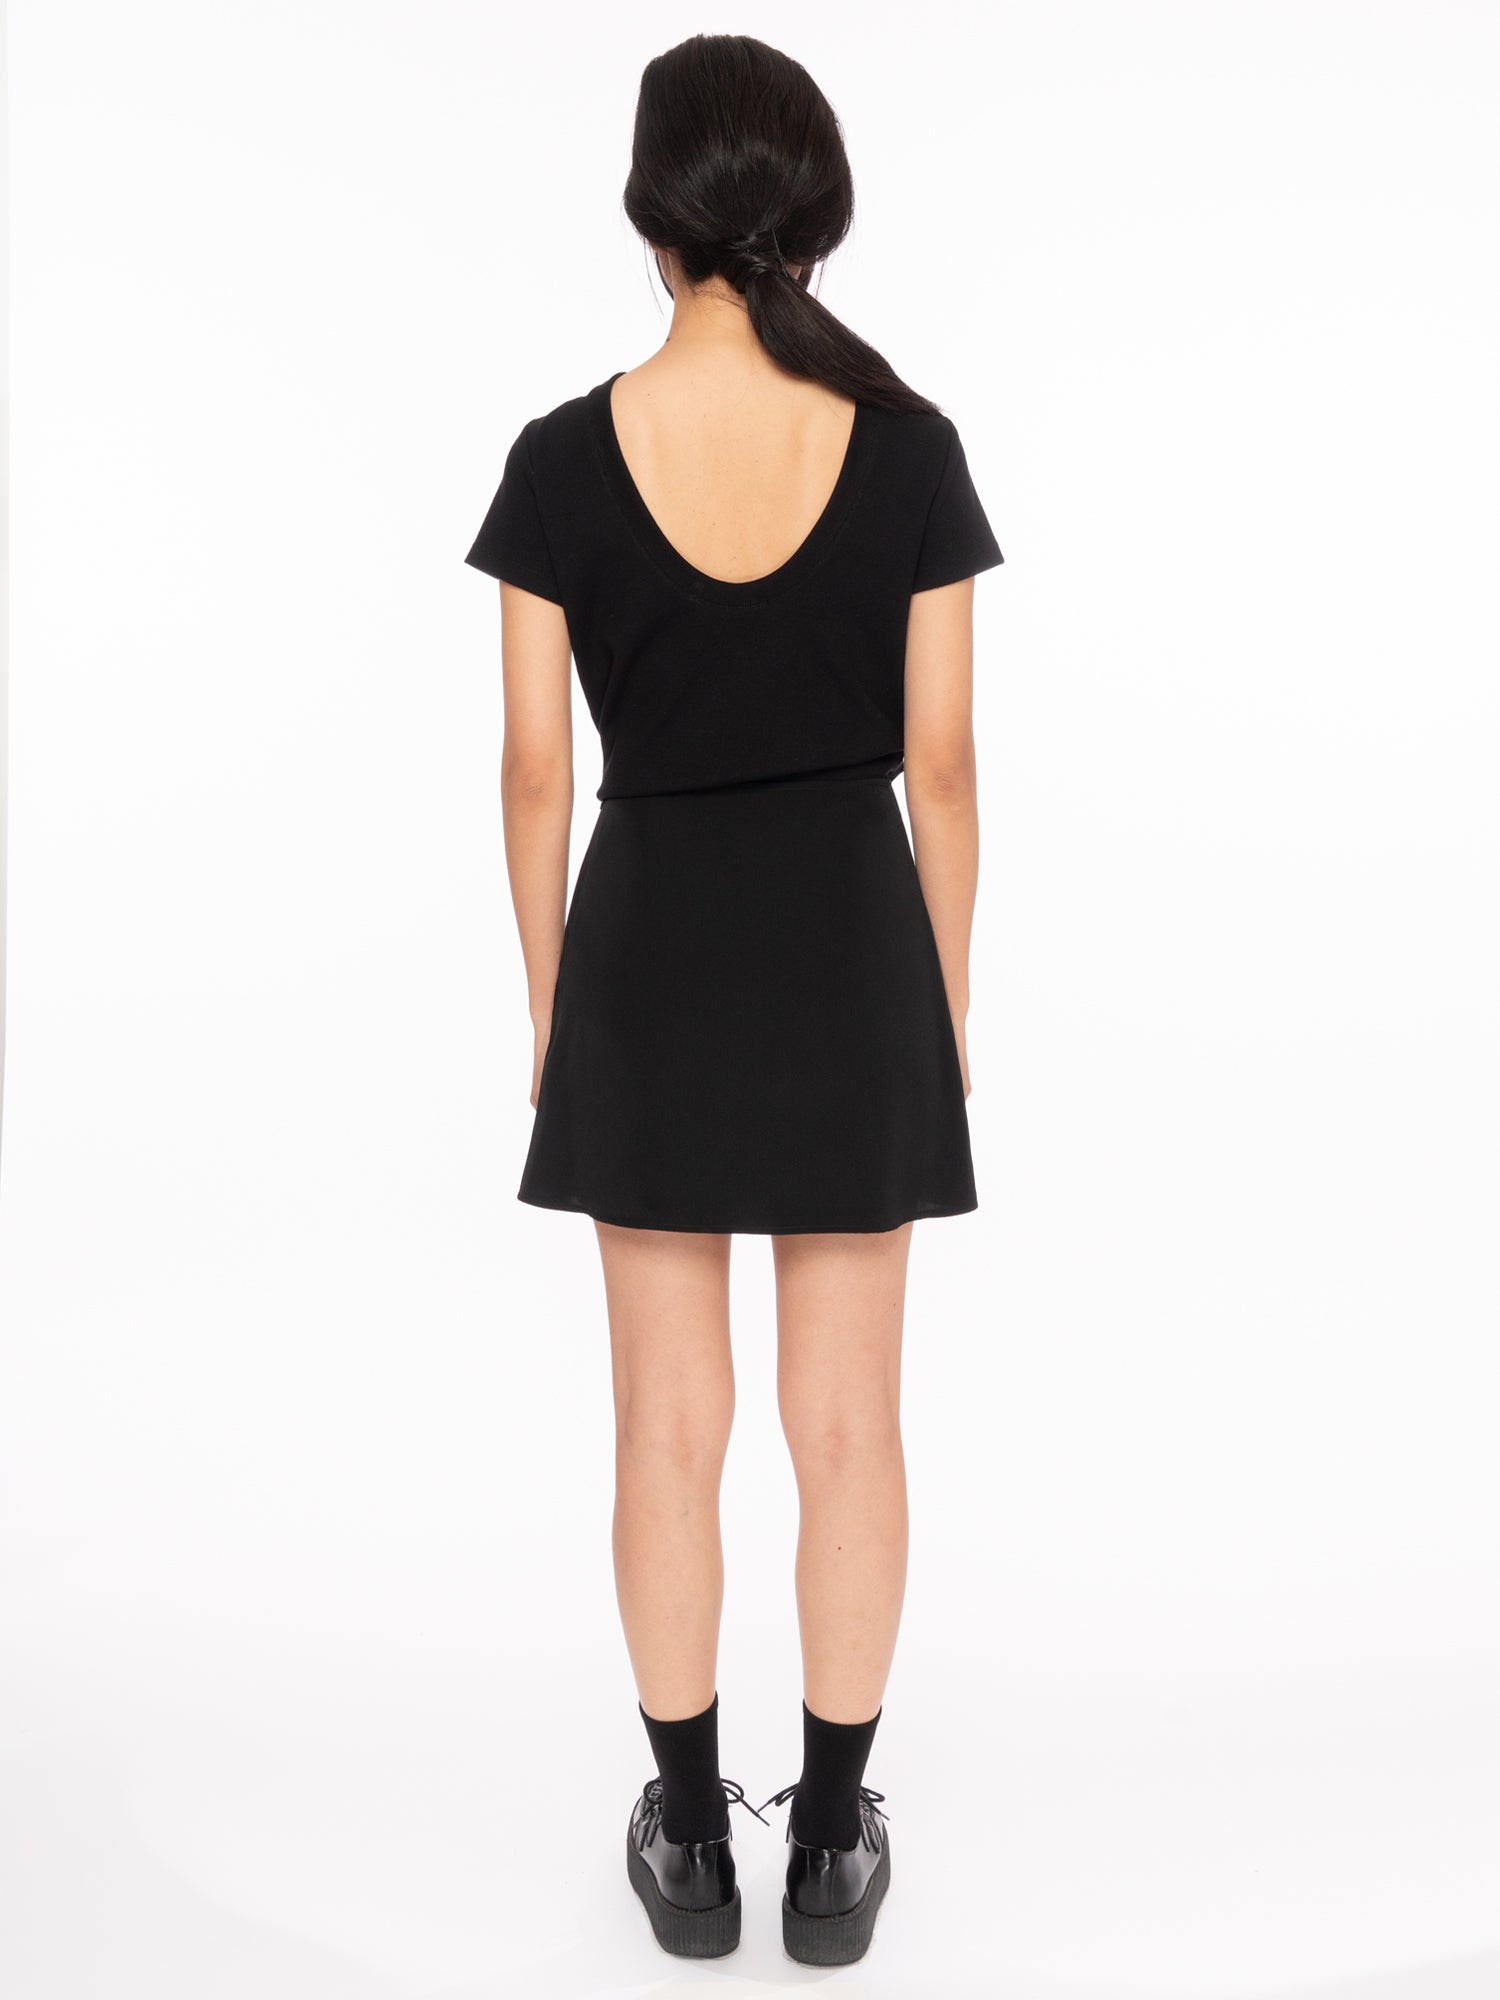 rosin studios black silky satin aline zipper mini skirt